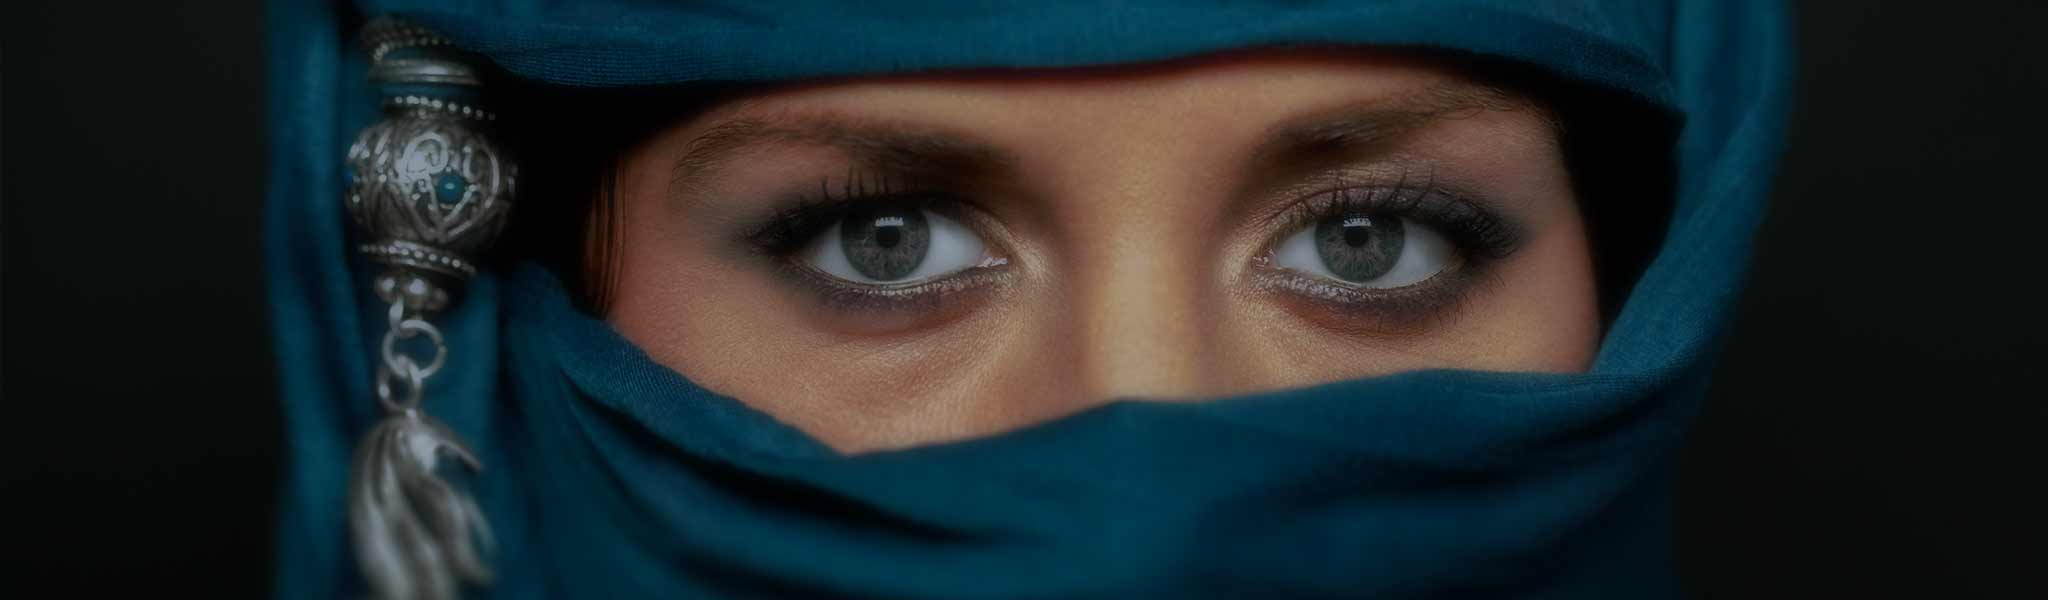 Woman eyes niqab